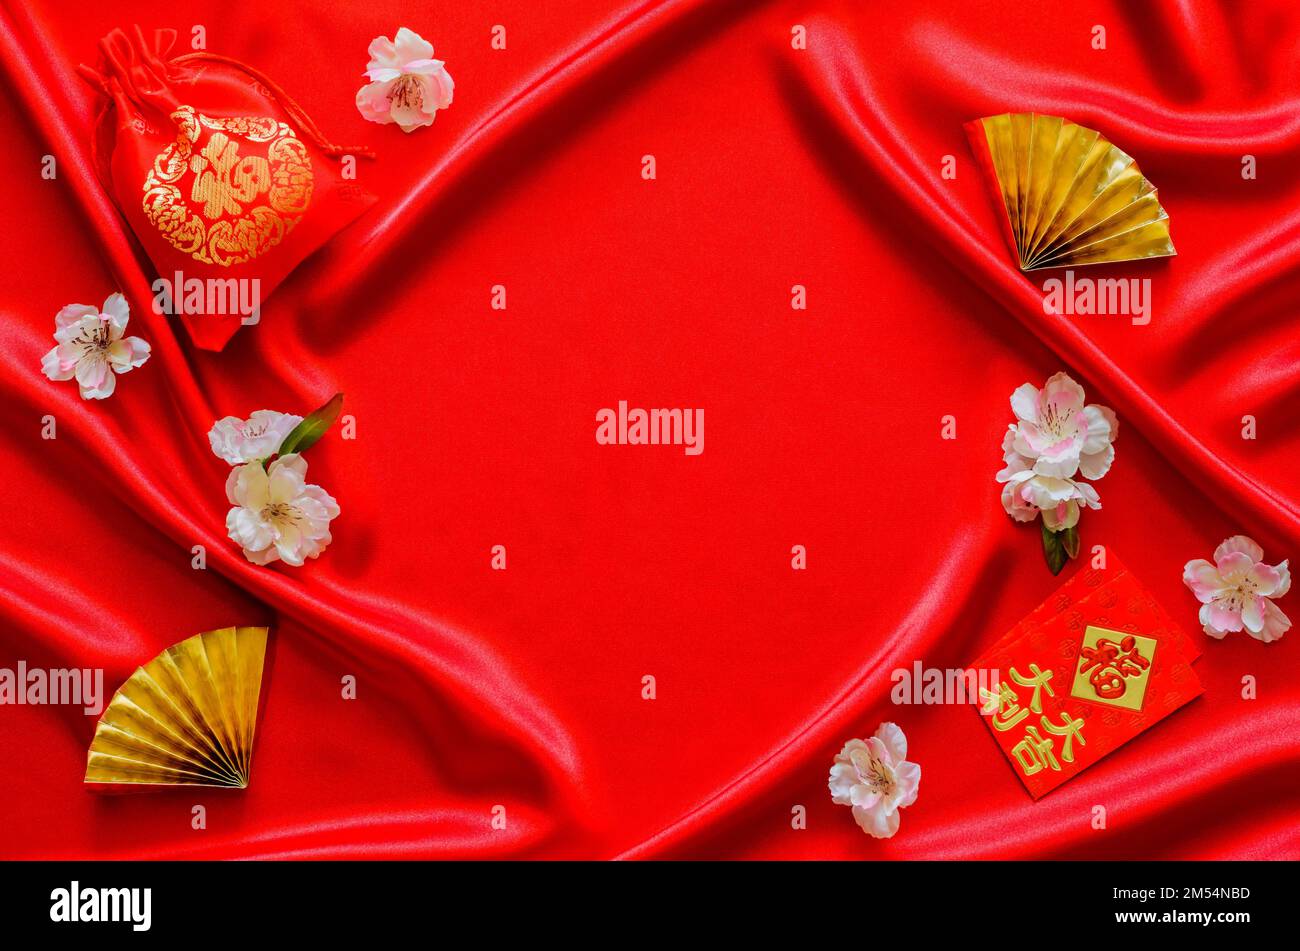 Sfondo di tessuto di raso rosso con borsa rossa (parola media ricchezza), e pacchetti busta rossa o ang bao (parola media ricchezza, fortunato) con i fan d'oro per il cinese Foto Stock